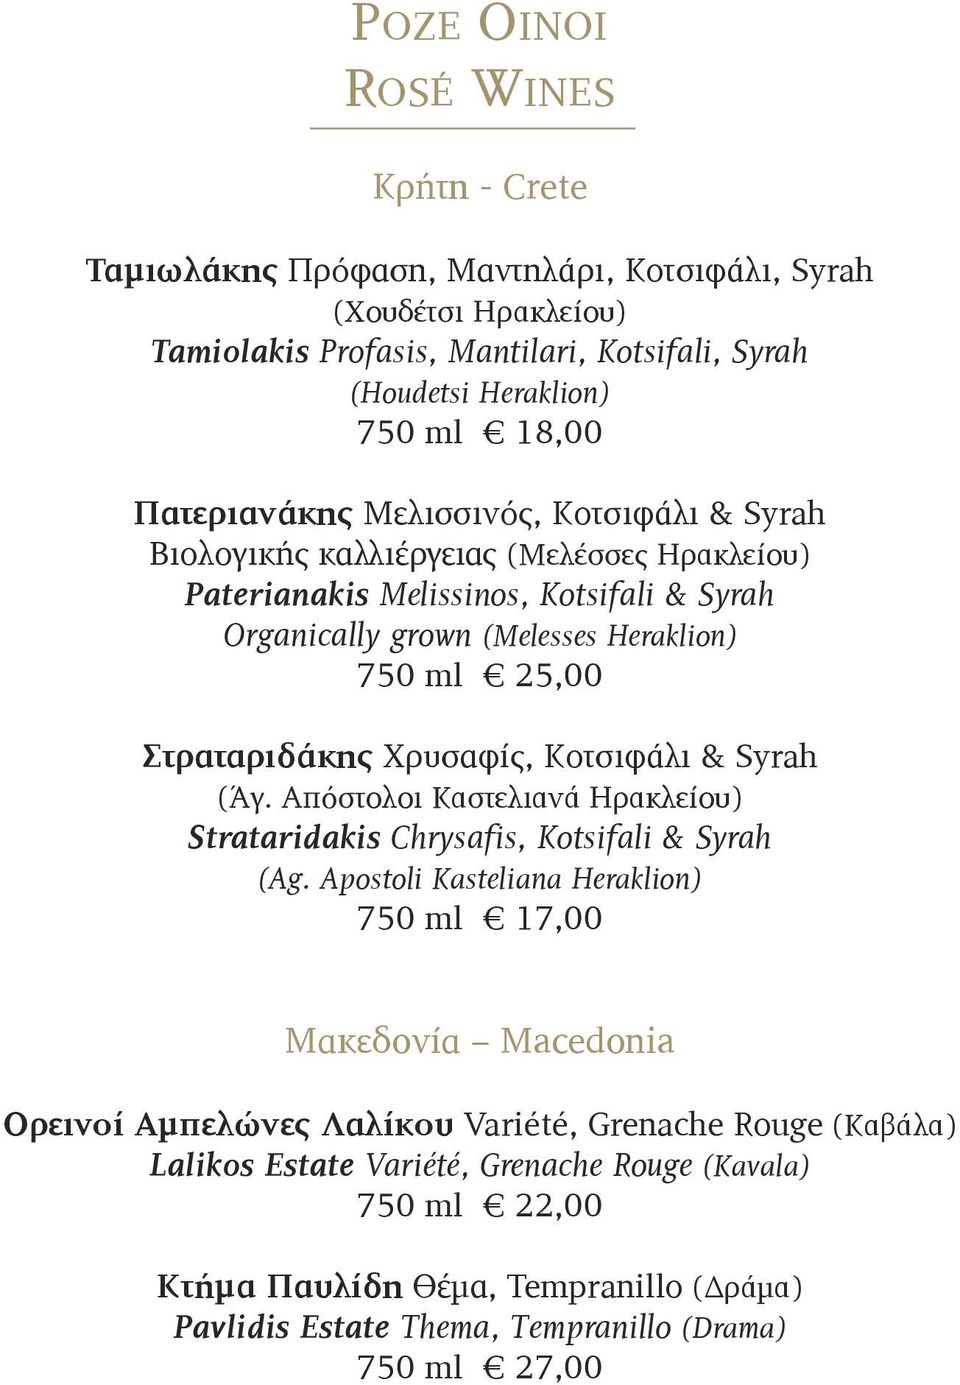 Χρυσαφίς, κοτσιφάλι & Syrah (Άγ. Απόστολοι καστελιανά Ηρακλείου) Strataridakis Chrysafis, Kotsifali & Syrah (Ag.